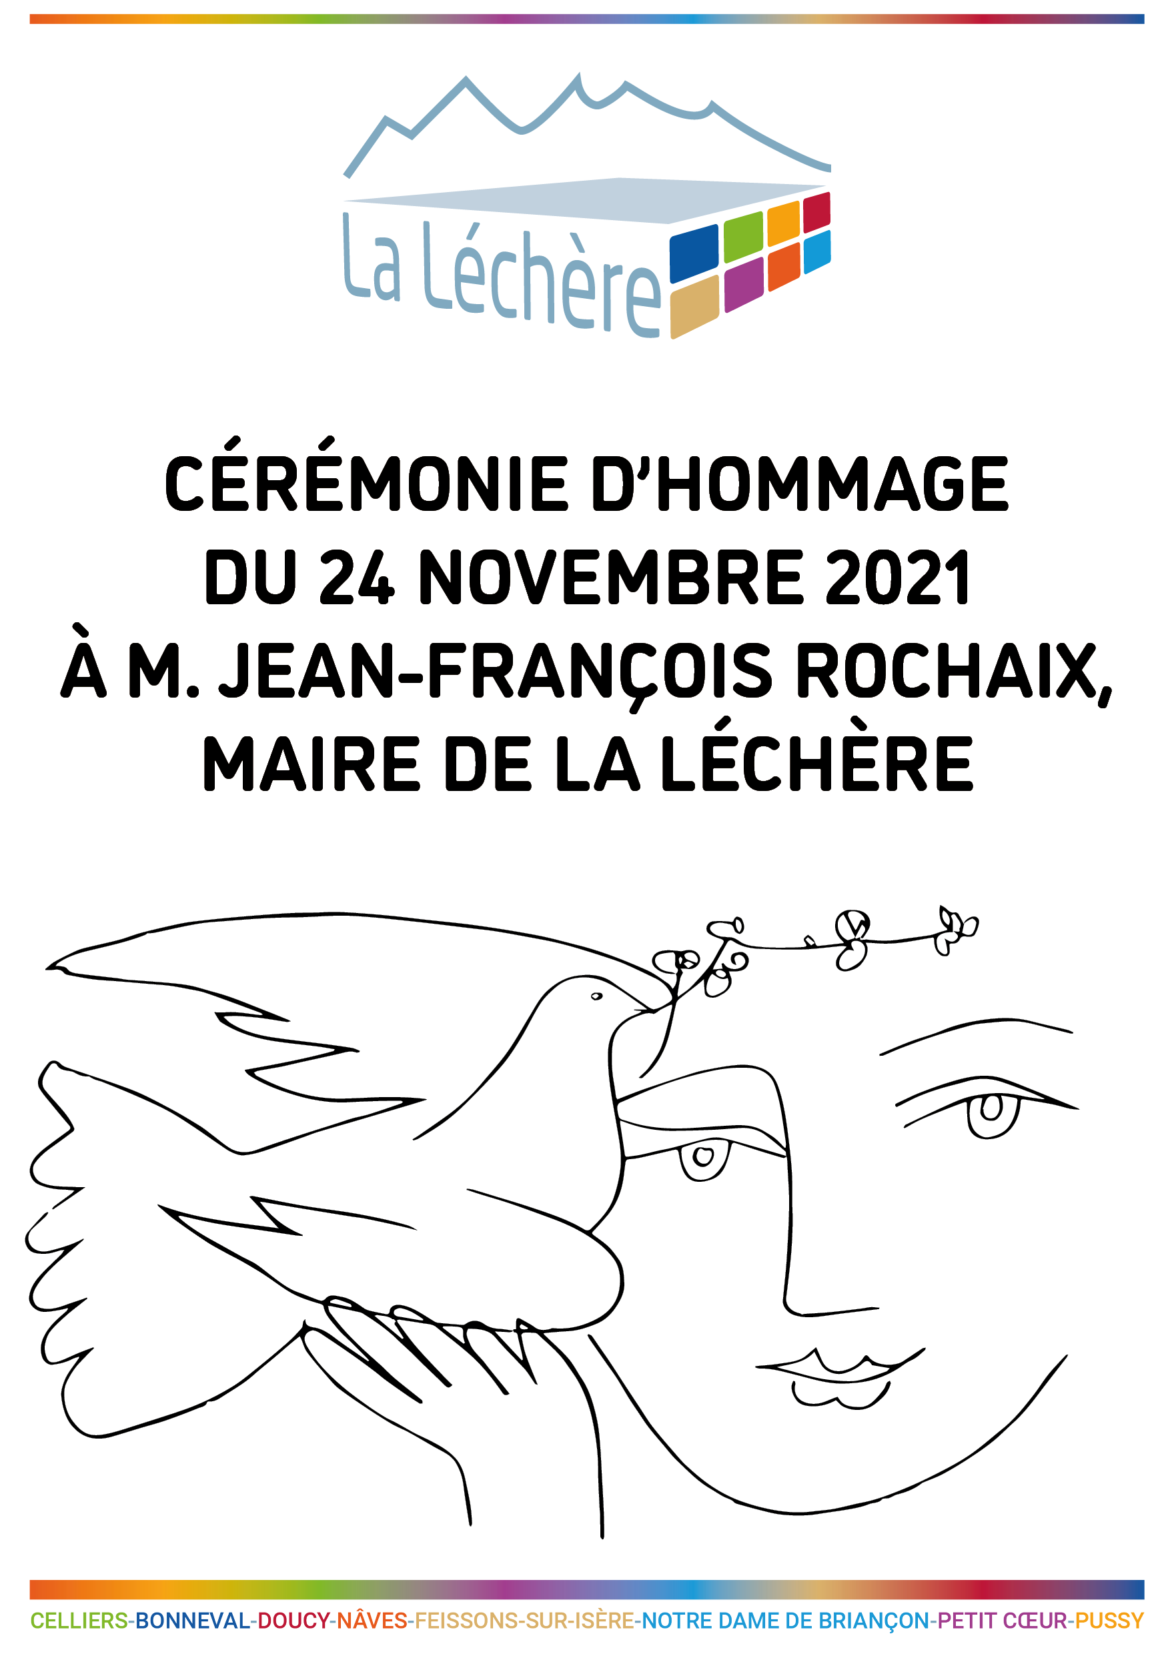 Cérémonie d’hommage à M. Jean-François Rochaix